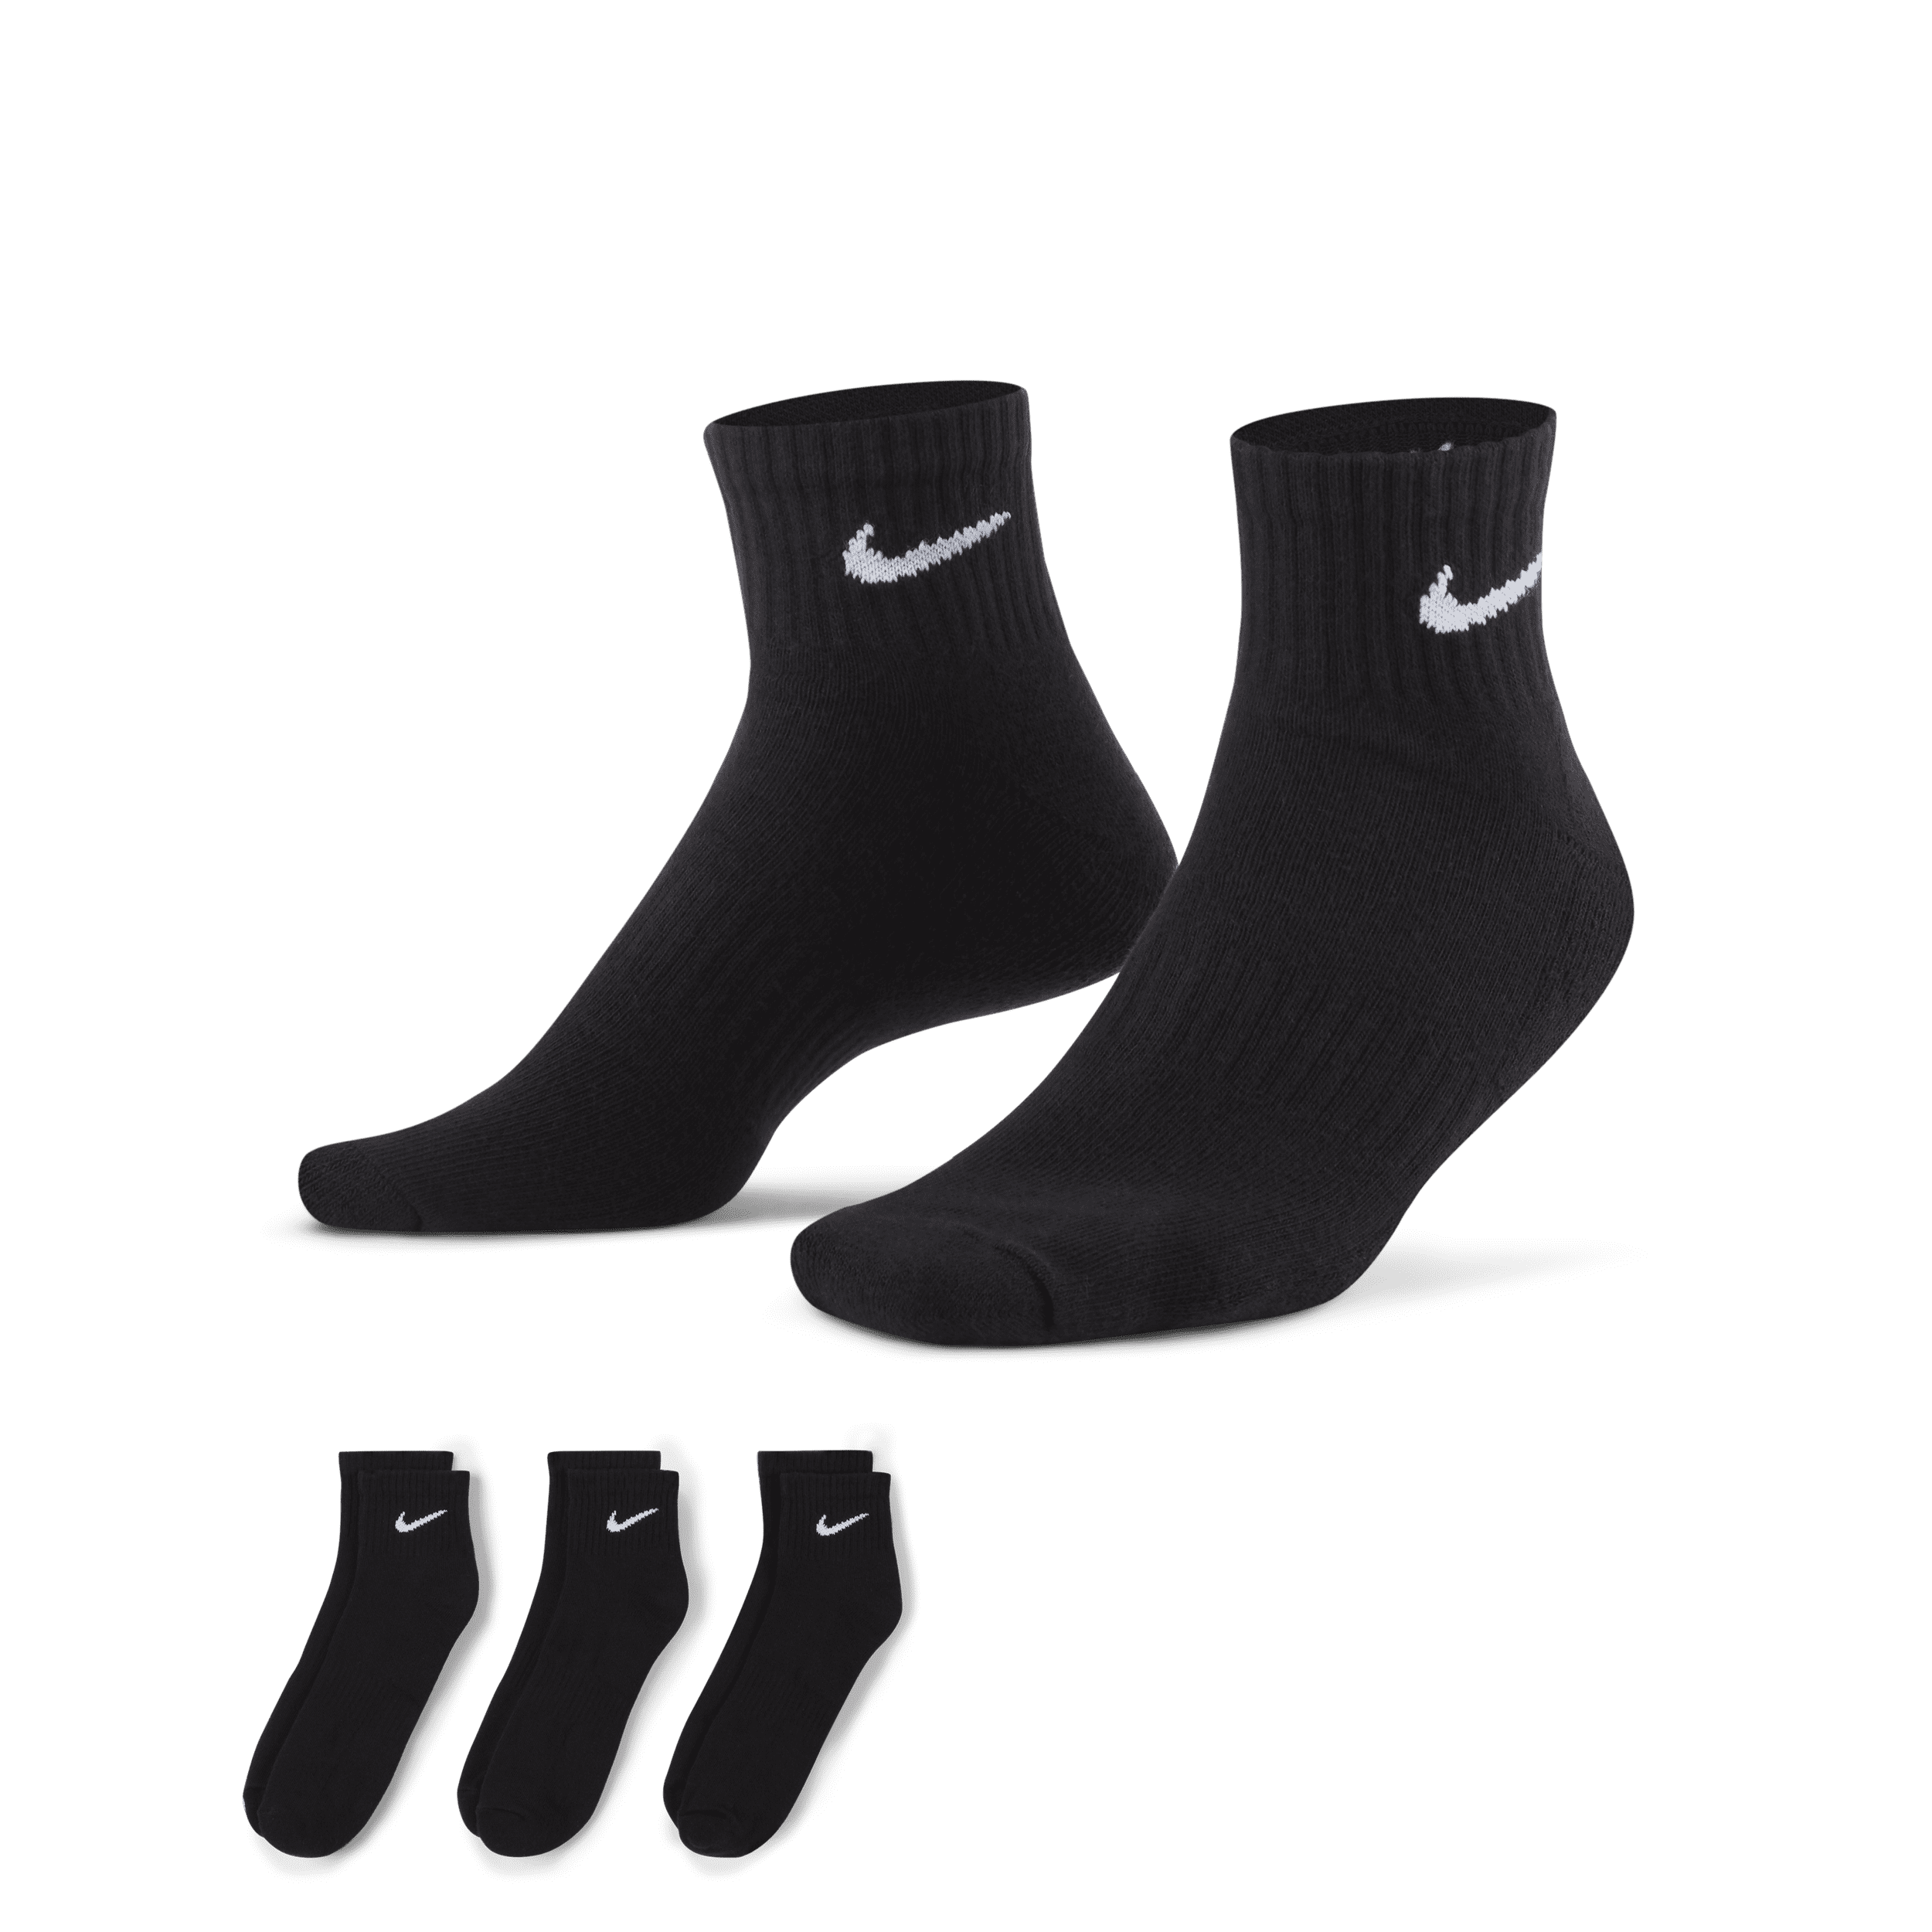 Calze da training alla caviglia Nike Everyday Cushioned (3 paia) - Nero